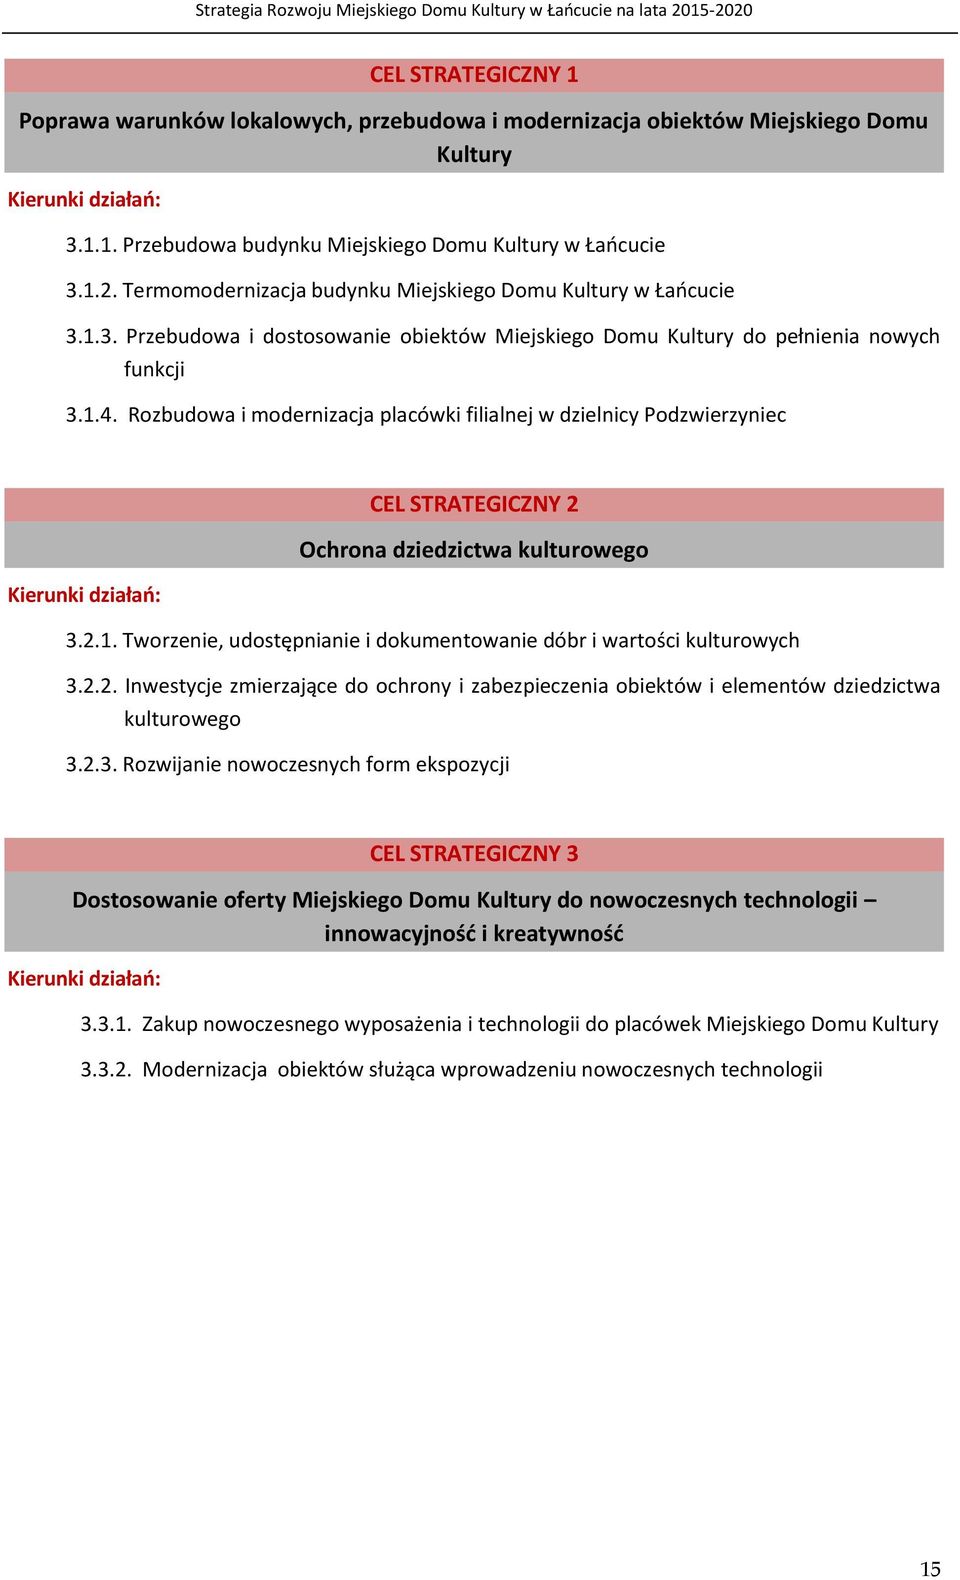 Rozbudowa i modernizacja placówki filialnej w dzielnicy Podzwierzyniec CEL STRATEGICZNY 2 Ochrona dziedzictwa kulturowego Kierunki działań: 3.2.1.